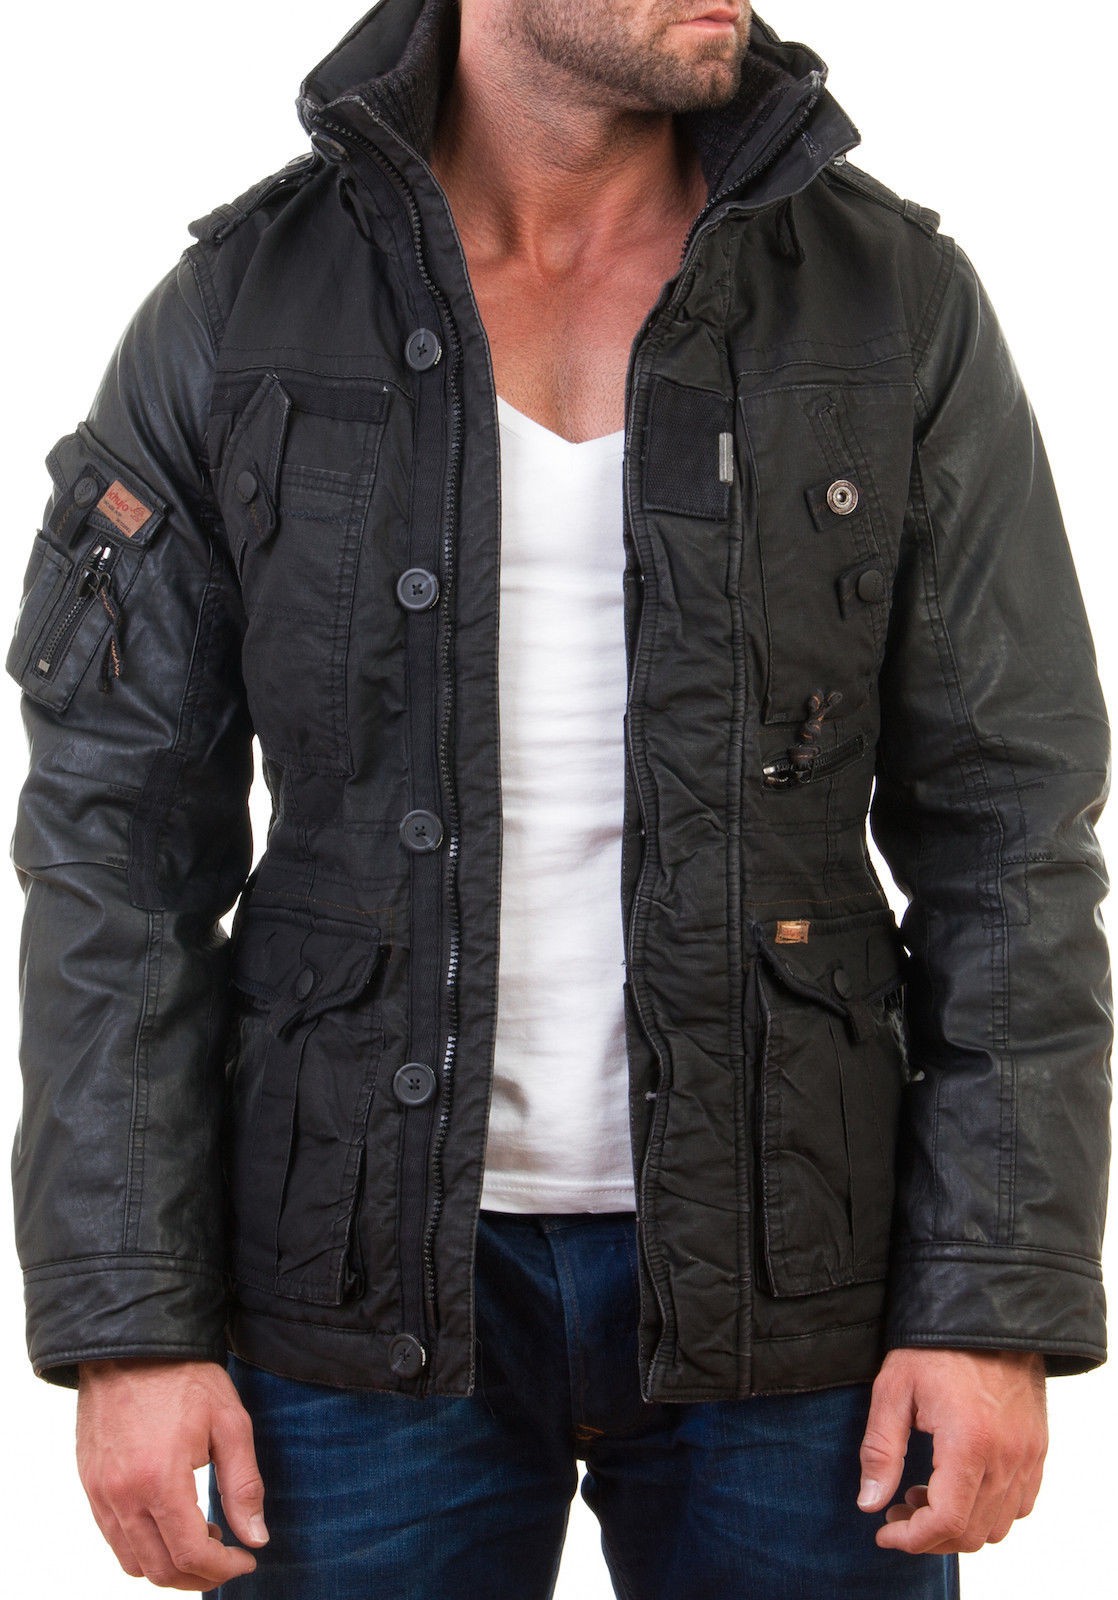 Khujo Men's Winter Jacket PU Faux Leather Jacket Tomboy Coat Parker ...